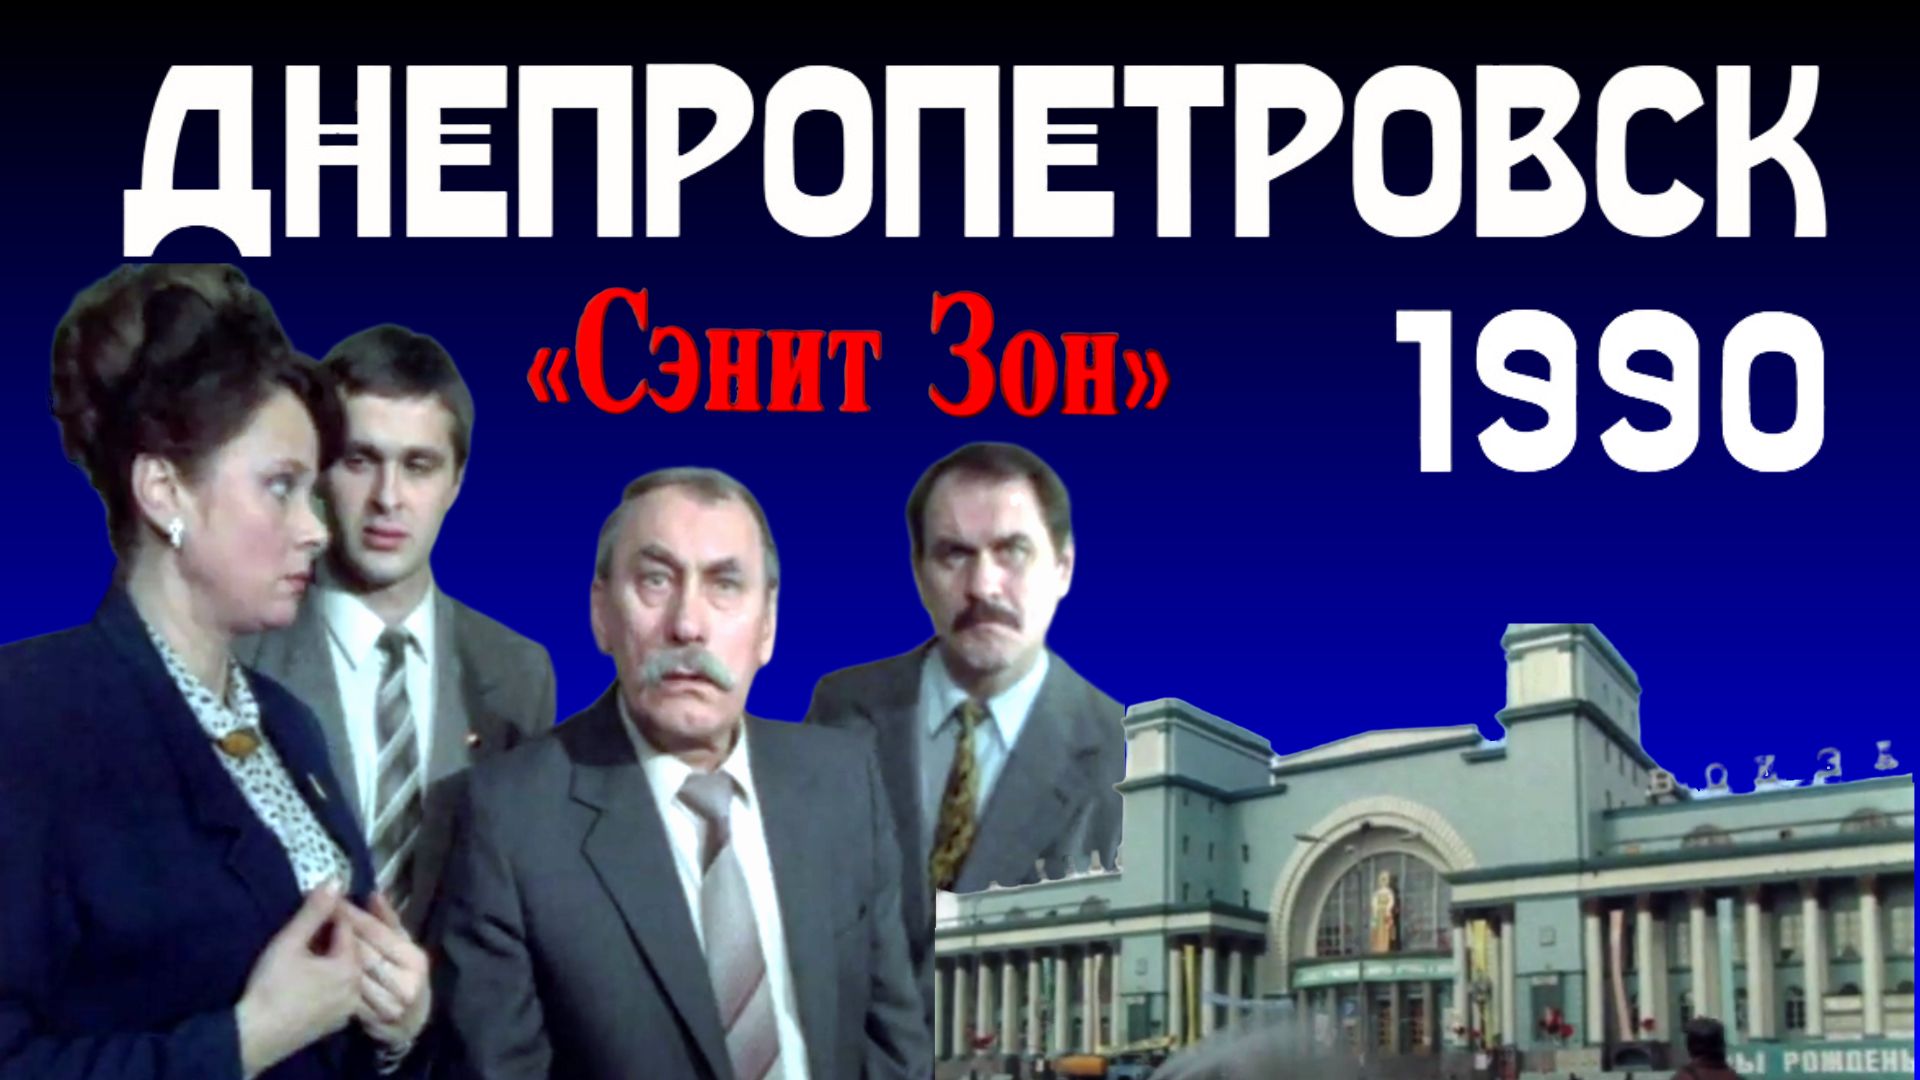 Фильм "Санитарная зона" (Сэнит зон) снимали в Днепропетровске в 1990 году